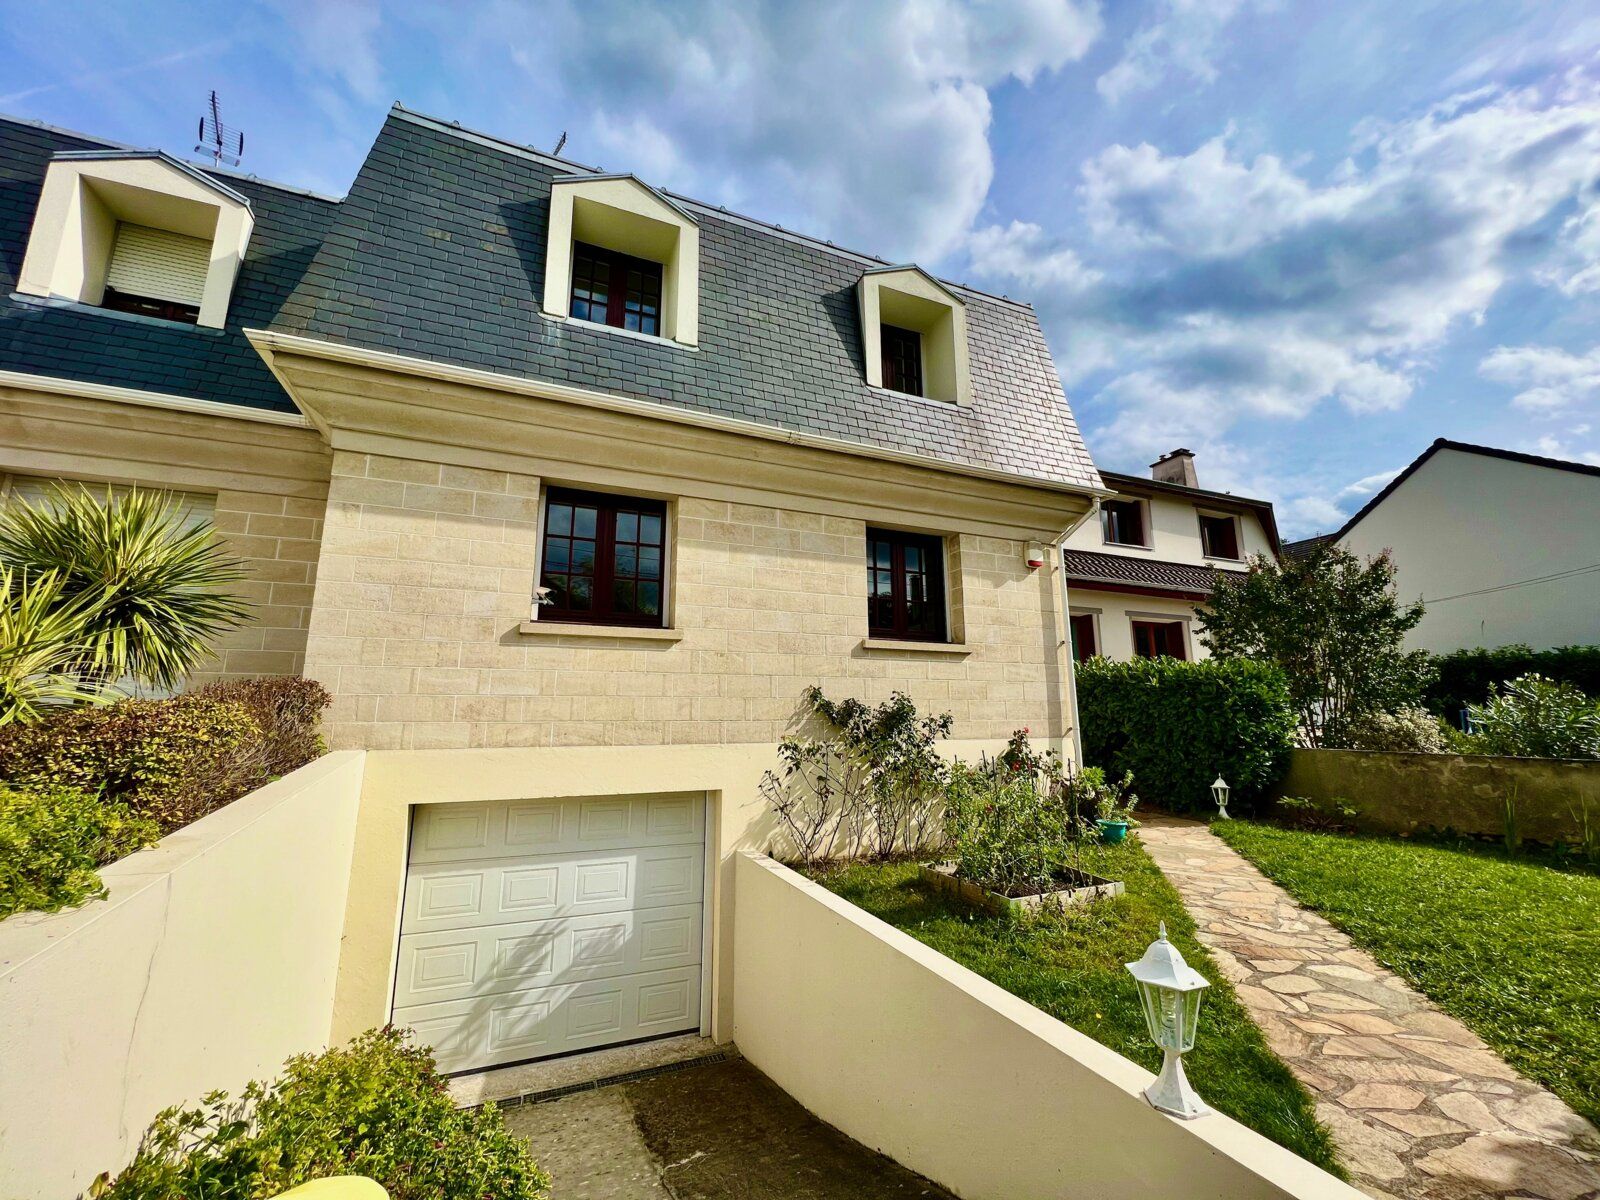 Maison à vendre 5 125.14m2 à Bry-sur-Marne vignette-1